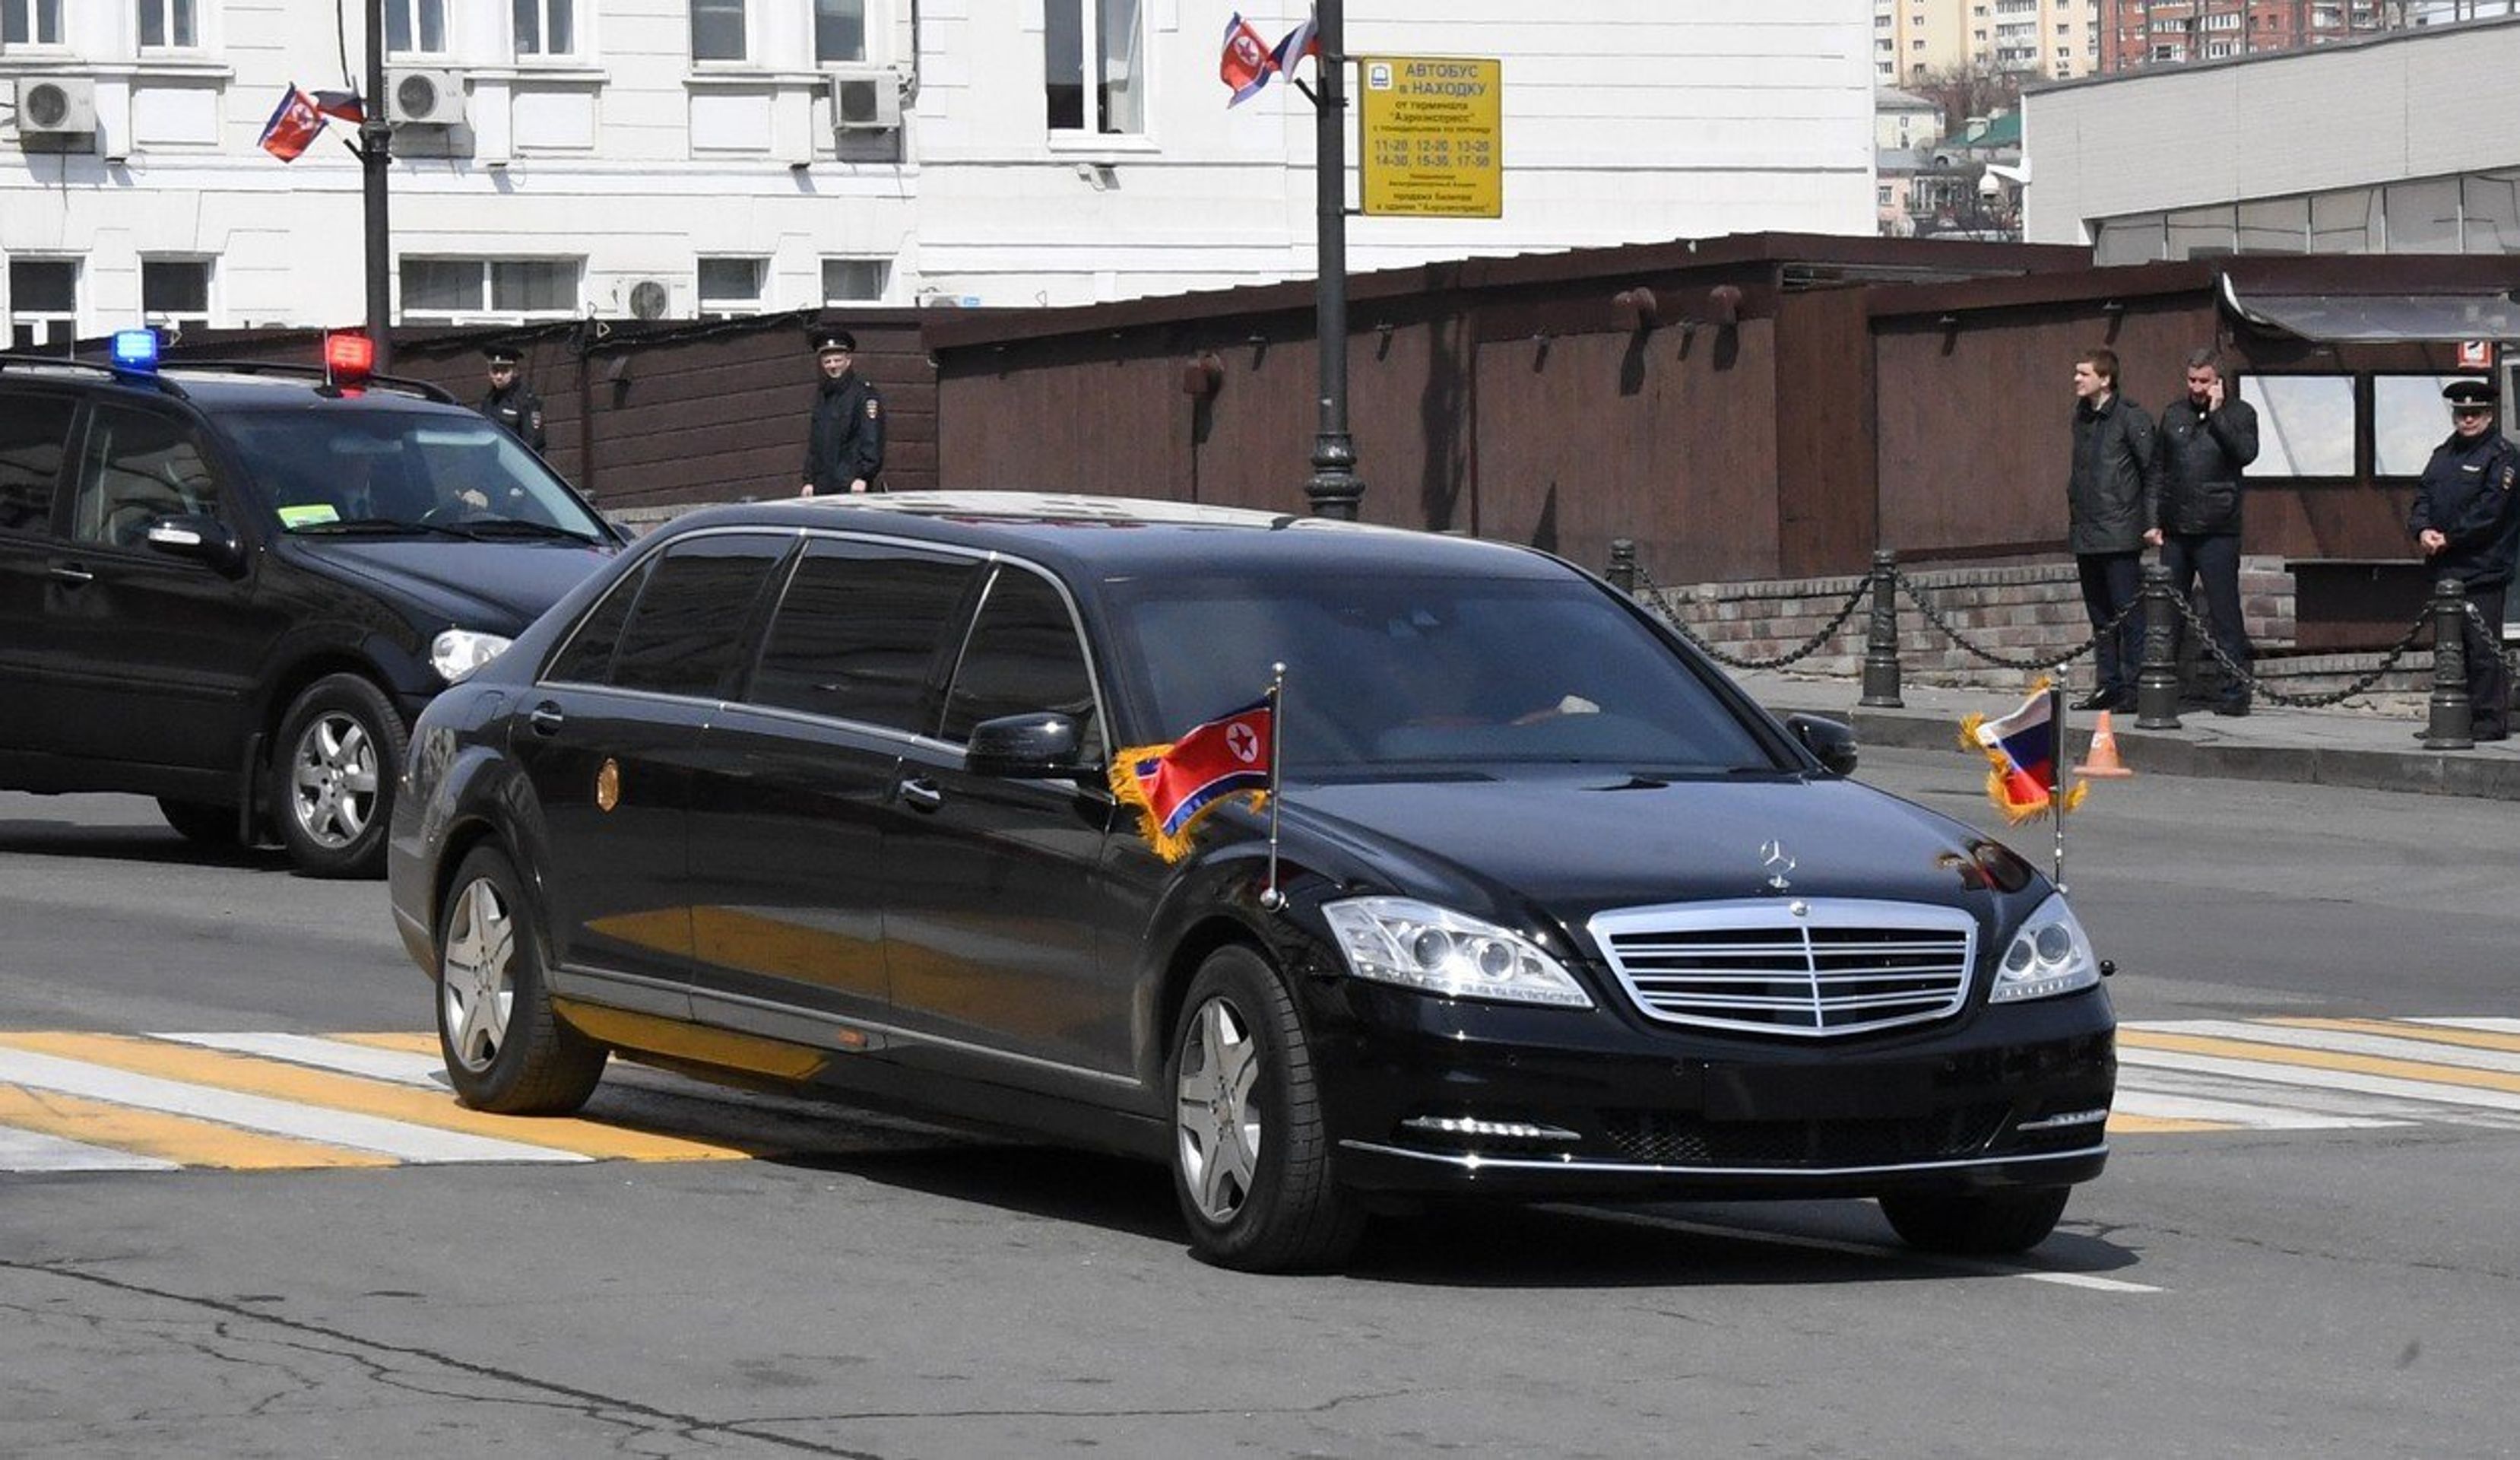 Kim Čong-unovy limuzíny ve Vladivostoku - 8 - Fotogalerie: Kim Čong-un a jeho pancéřované limuzíny (3/6)